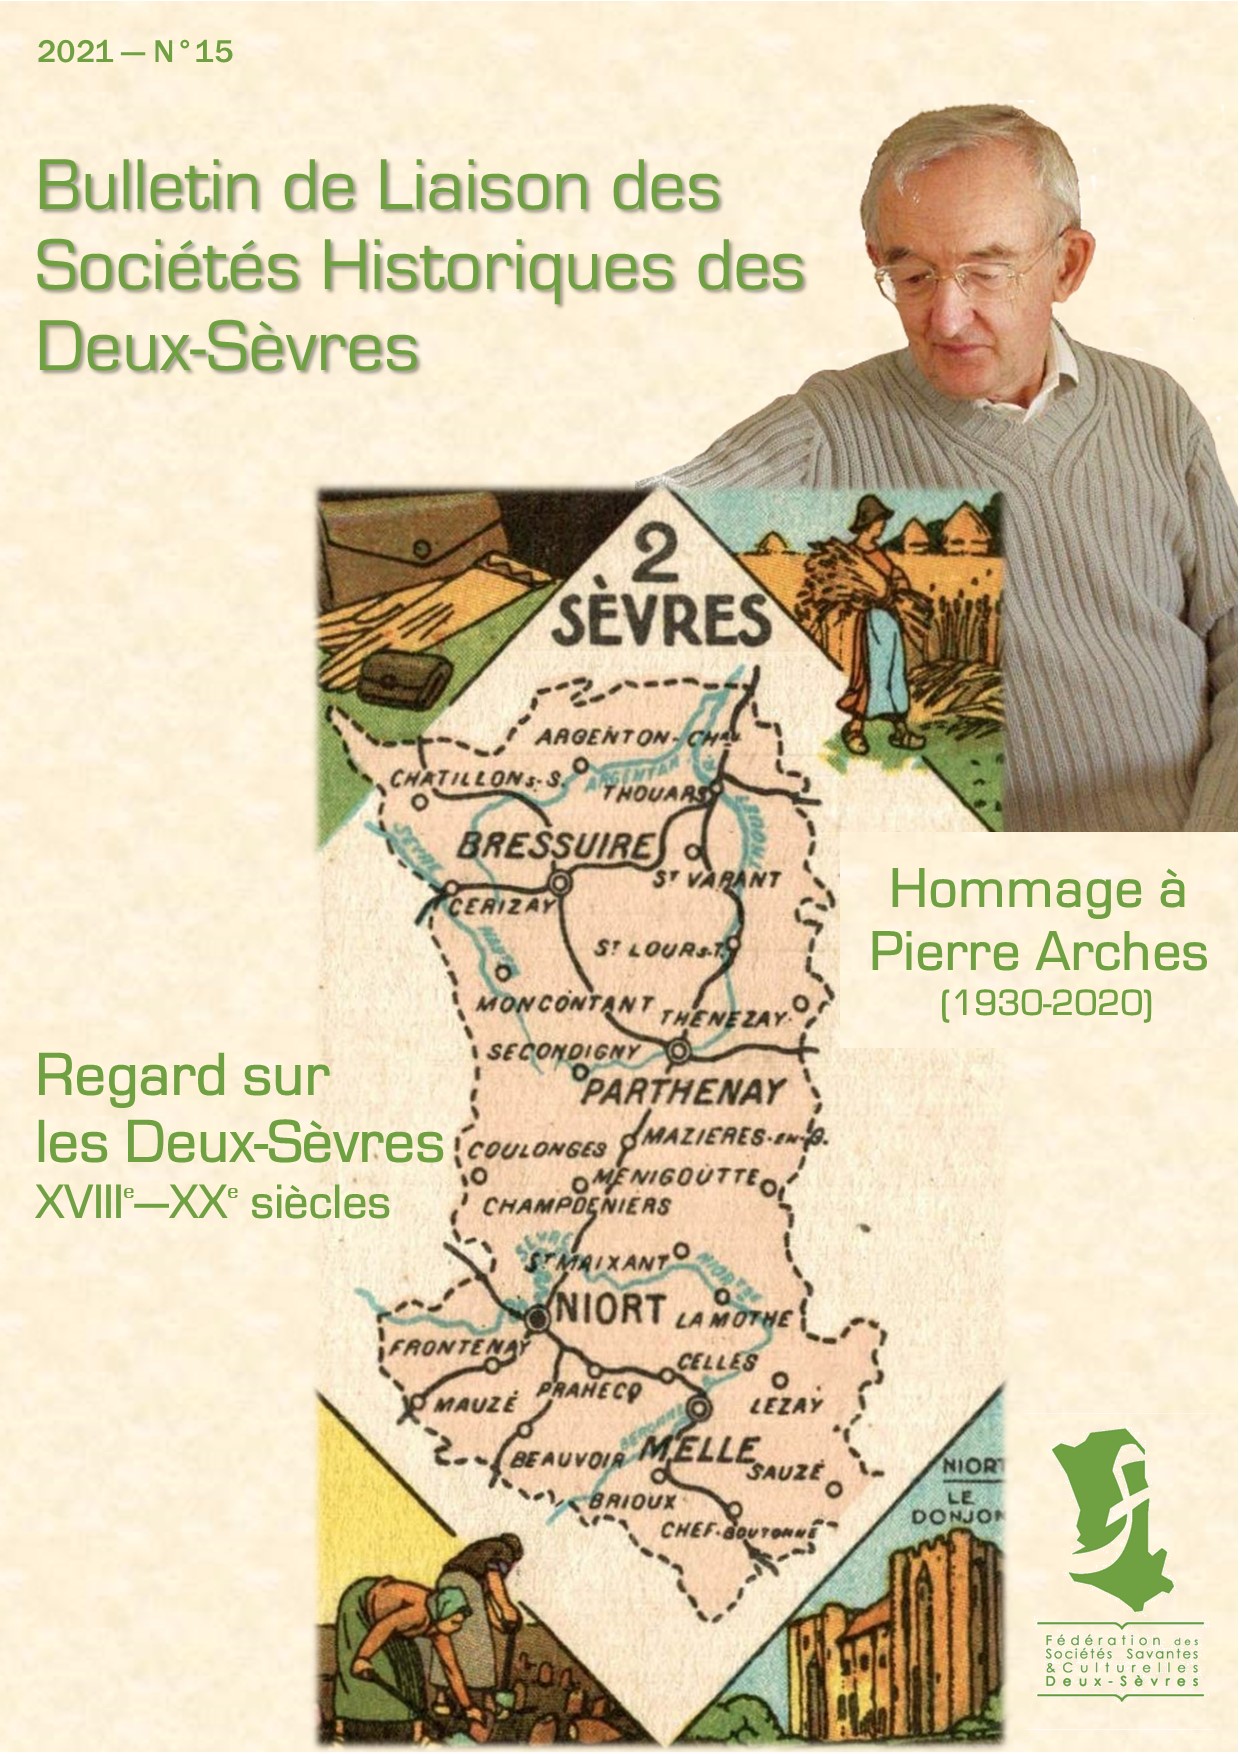 You are currently viewing Bulletin de liaison des sociétés historiques des Deux-Sèvres, N°15, année 2021